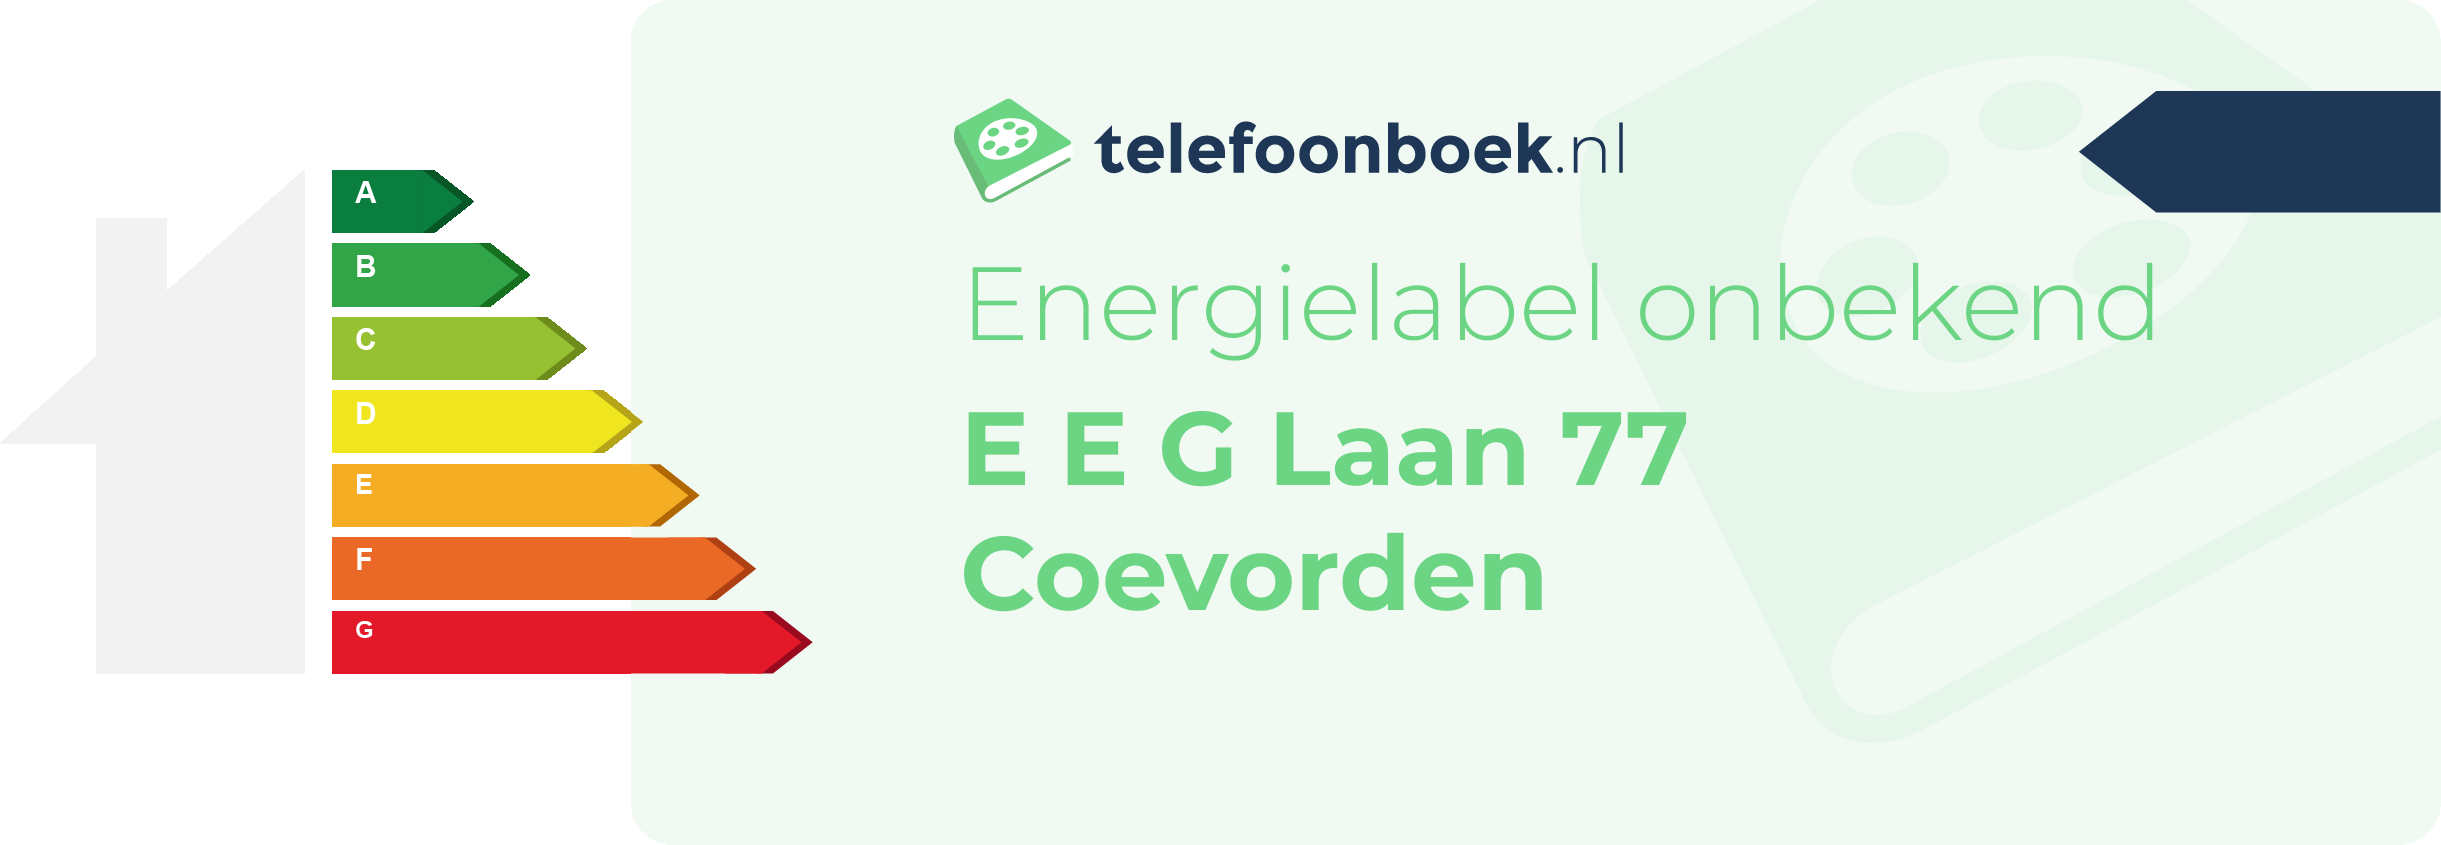 Energielabel E E G Laan 77 Coevorden